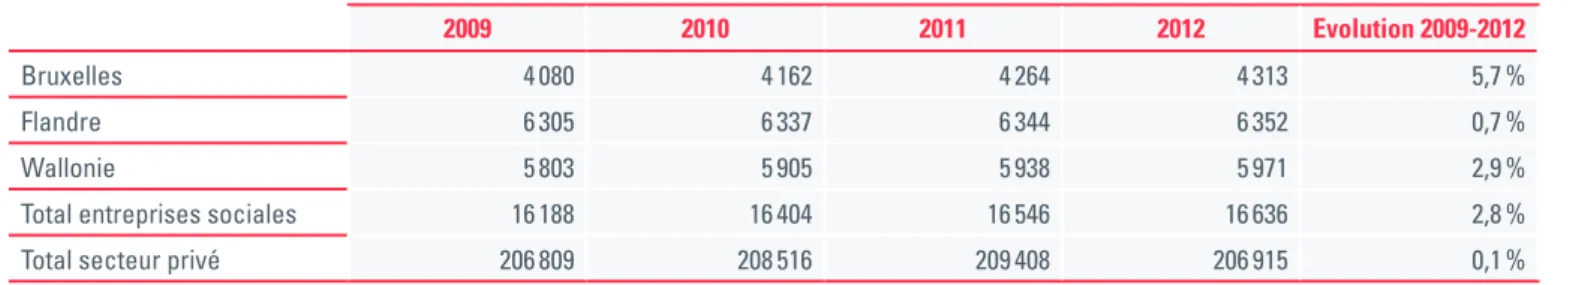 Tableau 1. Evolution du nombre d’entreprises sociales par Région (siège social) - 2009 à 2012